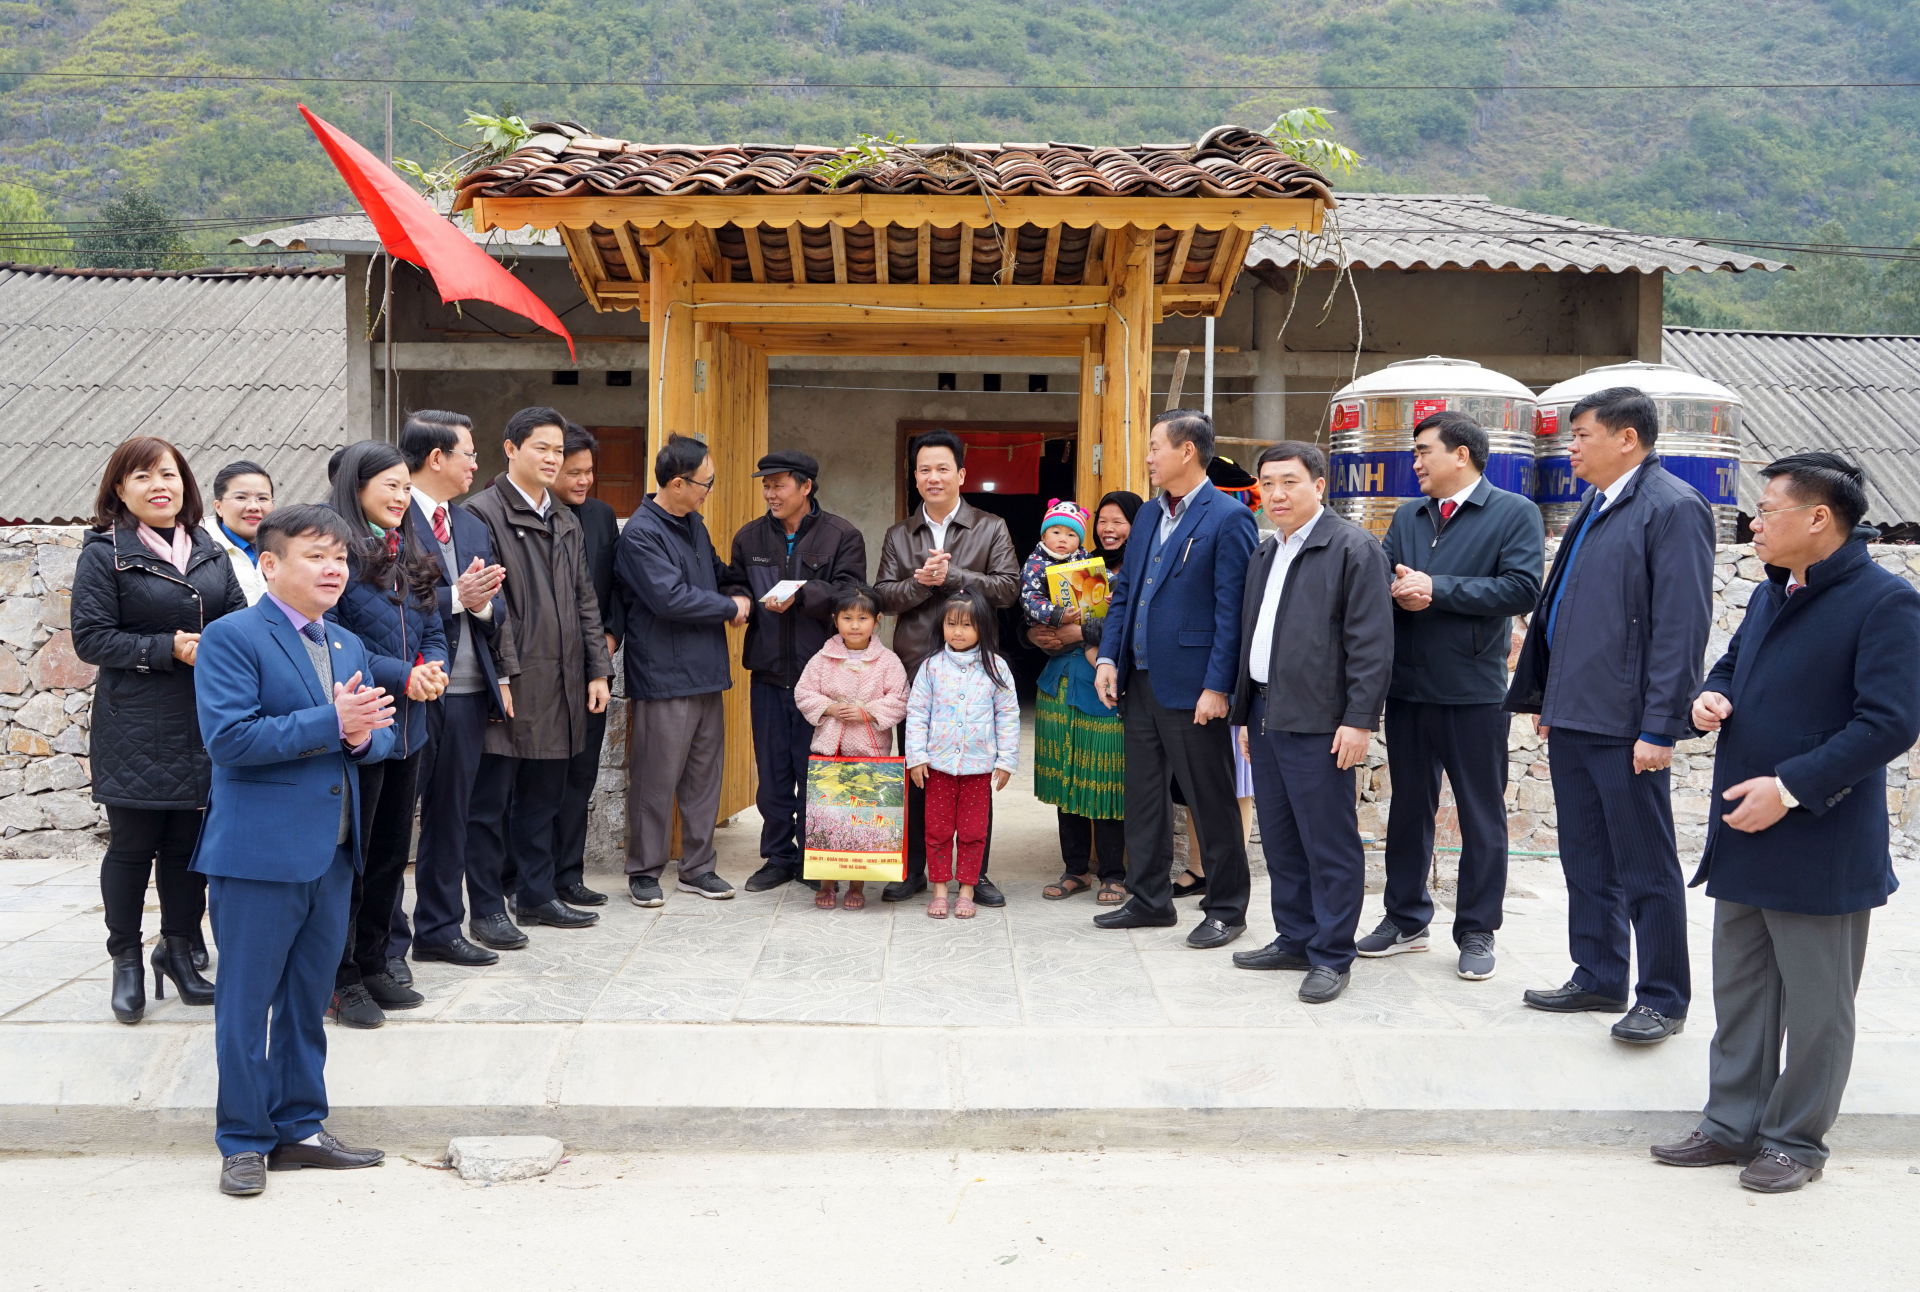 Bí thư Tỉnh ủy Đặng Quốc Khánh cùng các đồng chí lãnh đạo tỉnh thăm, tặng quà hộ gia đình ông Vừ Chính Phủ tại thôn Pả Vi Thượng, xã Pả Vi (Mèo Vạc).
